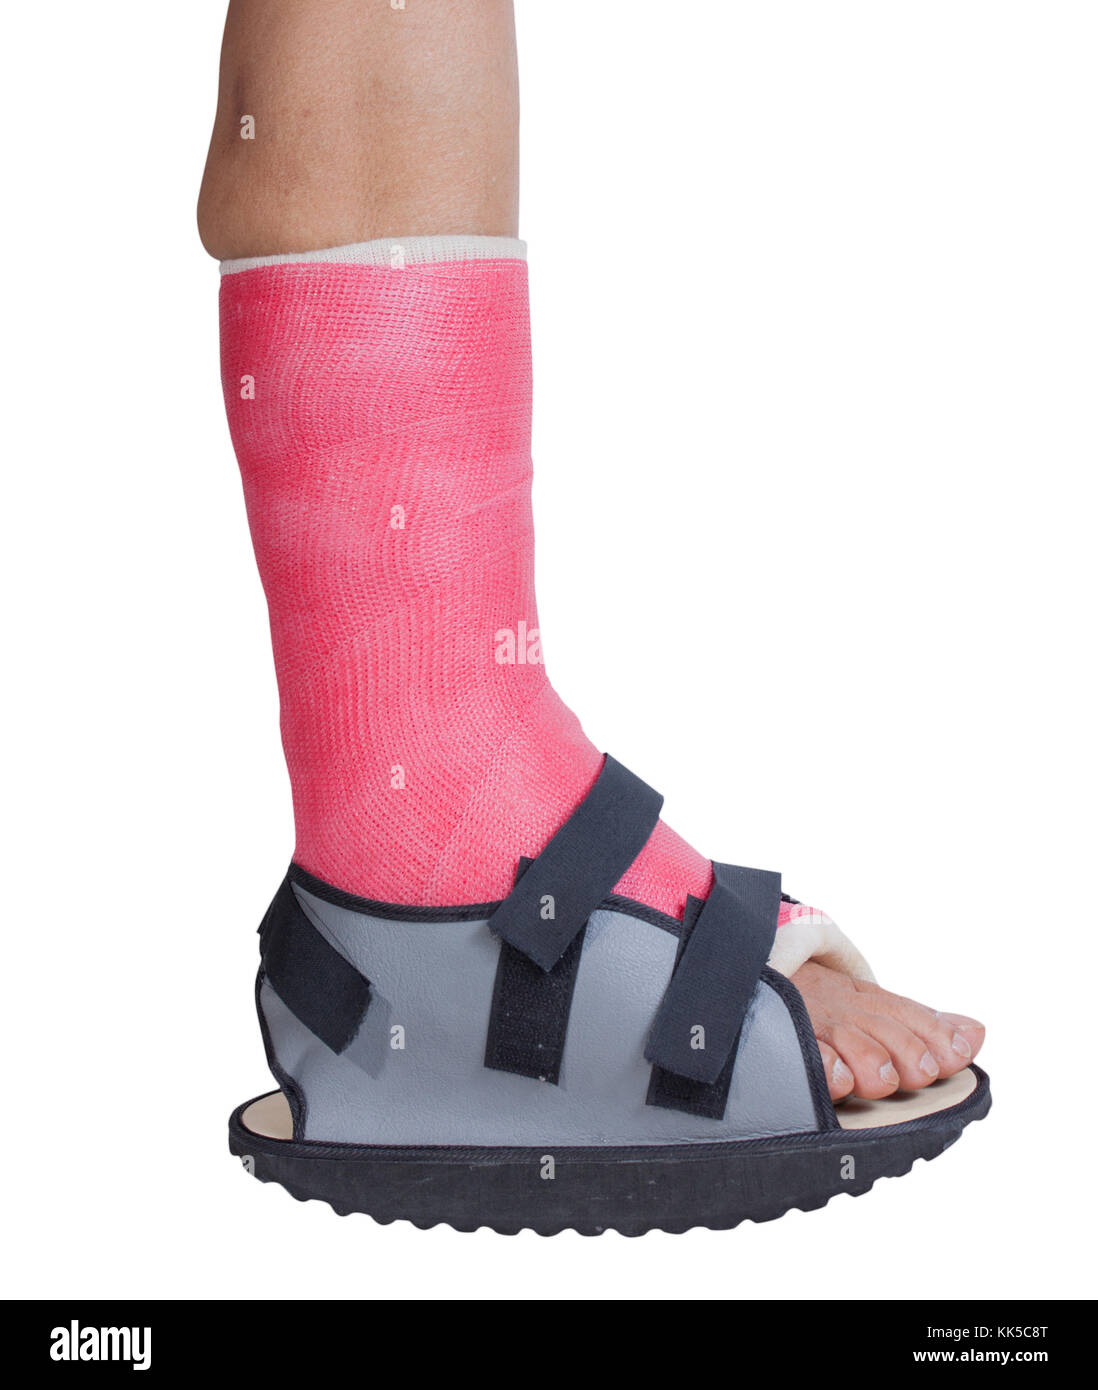 Stecca del piede trattamento di lesioni da spruzzi di caviglia, isolato su  bianco Foto stock - Alamy